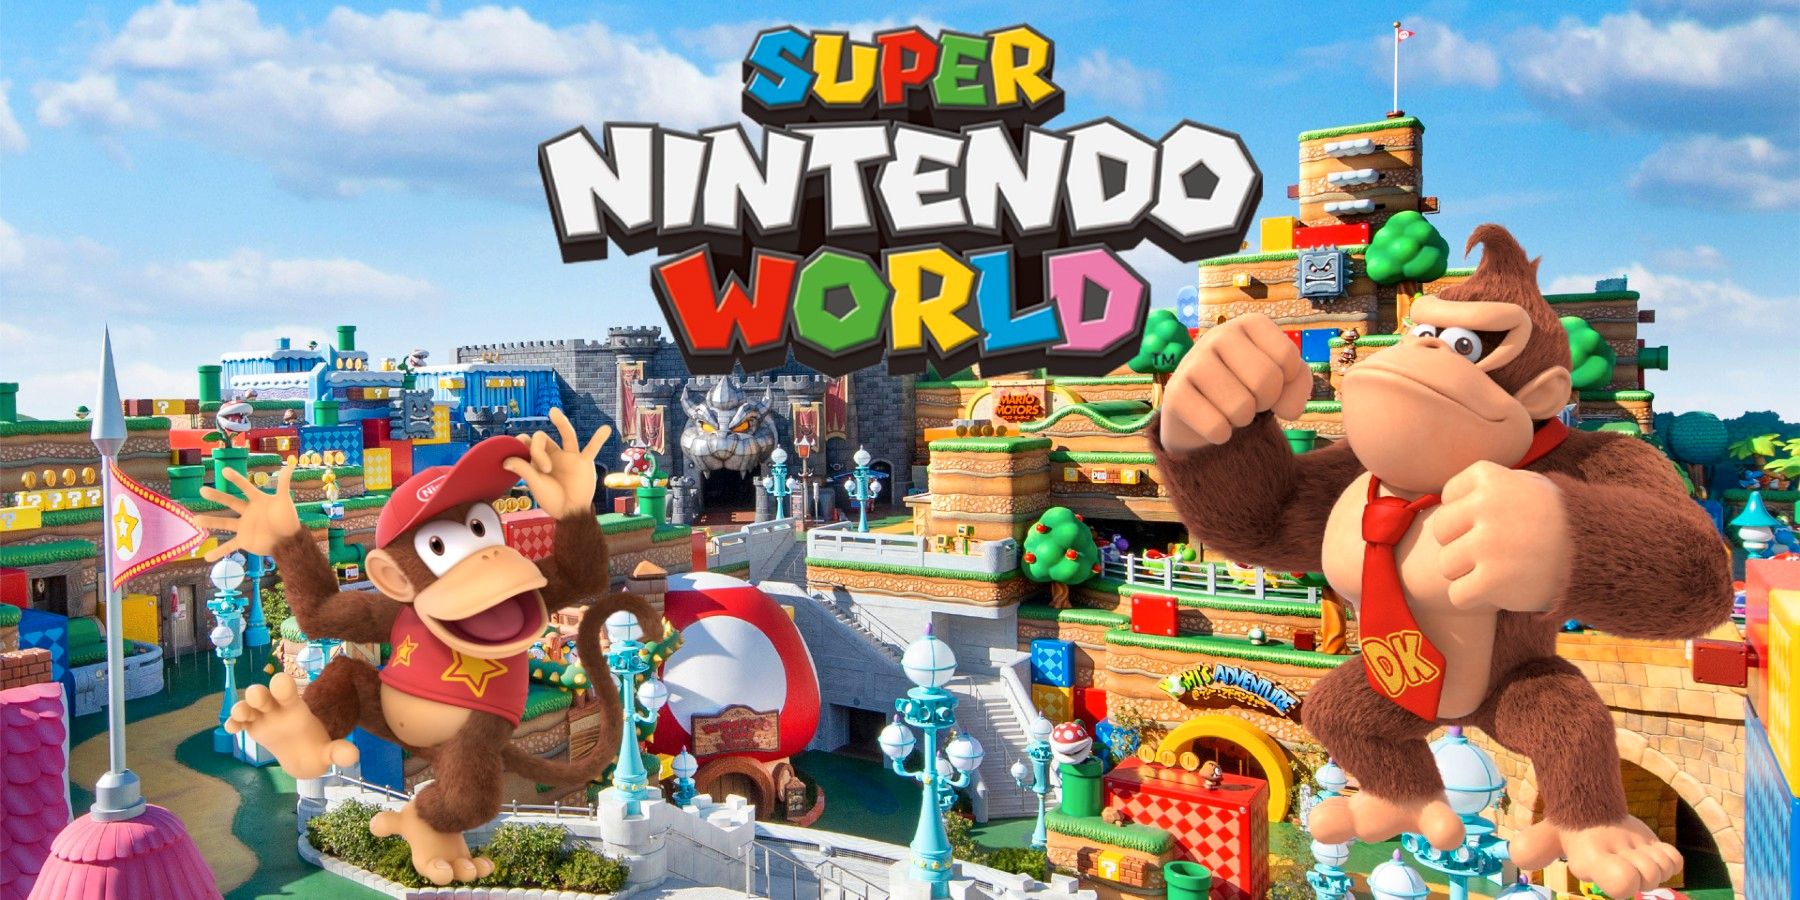 Super Nintendo Worldがドンキーコングの拡大を確認します